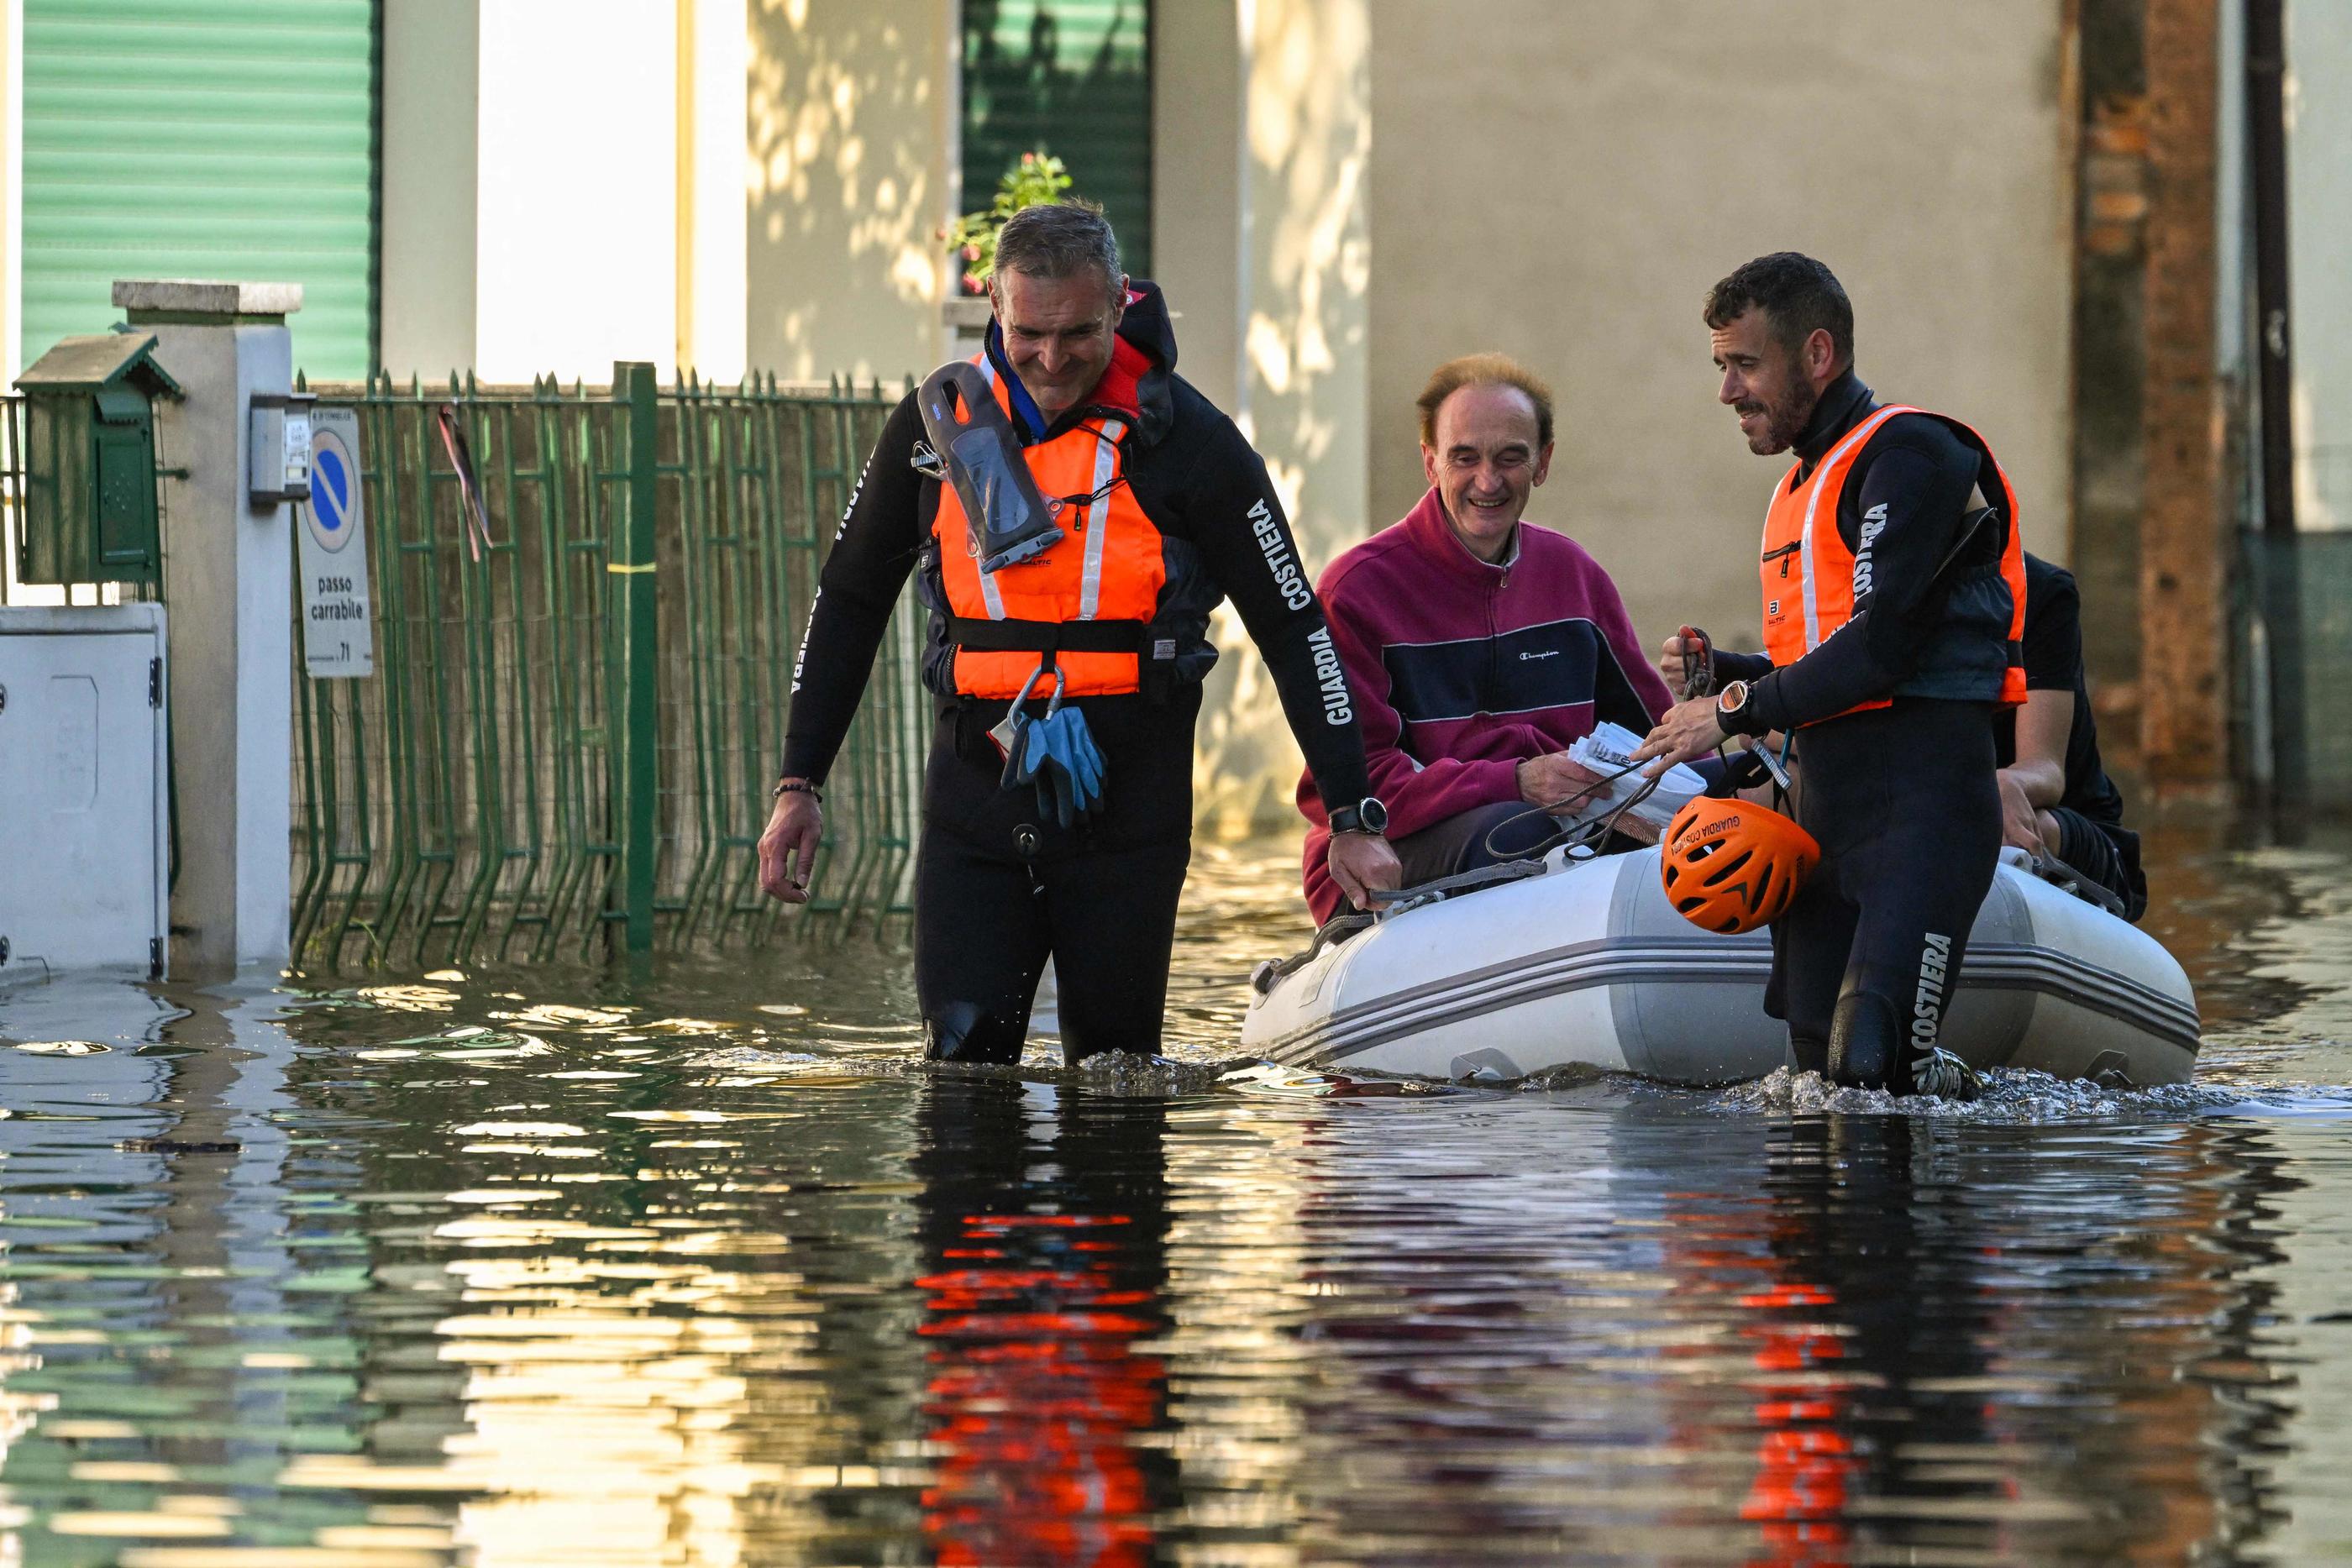 Des sauveteurs évacuent un sinistré dans une rue inondée de Conselice, près de Ravenne, ce dimanche, après les intempéries meurtrières qui ont frappé l'Emilie-Romagne dans le nord-ouest de l'Italie. AFP/Andreas Solaro